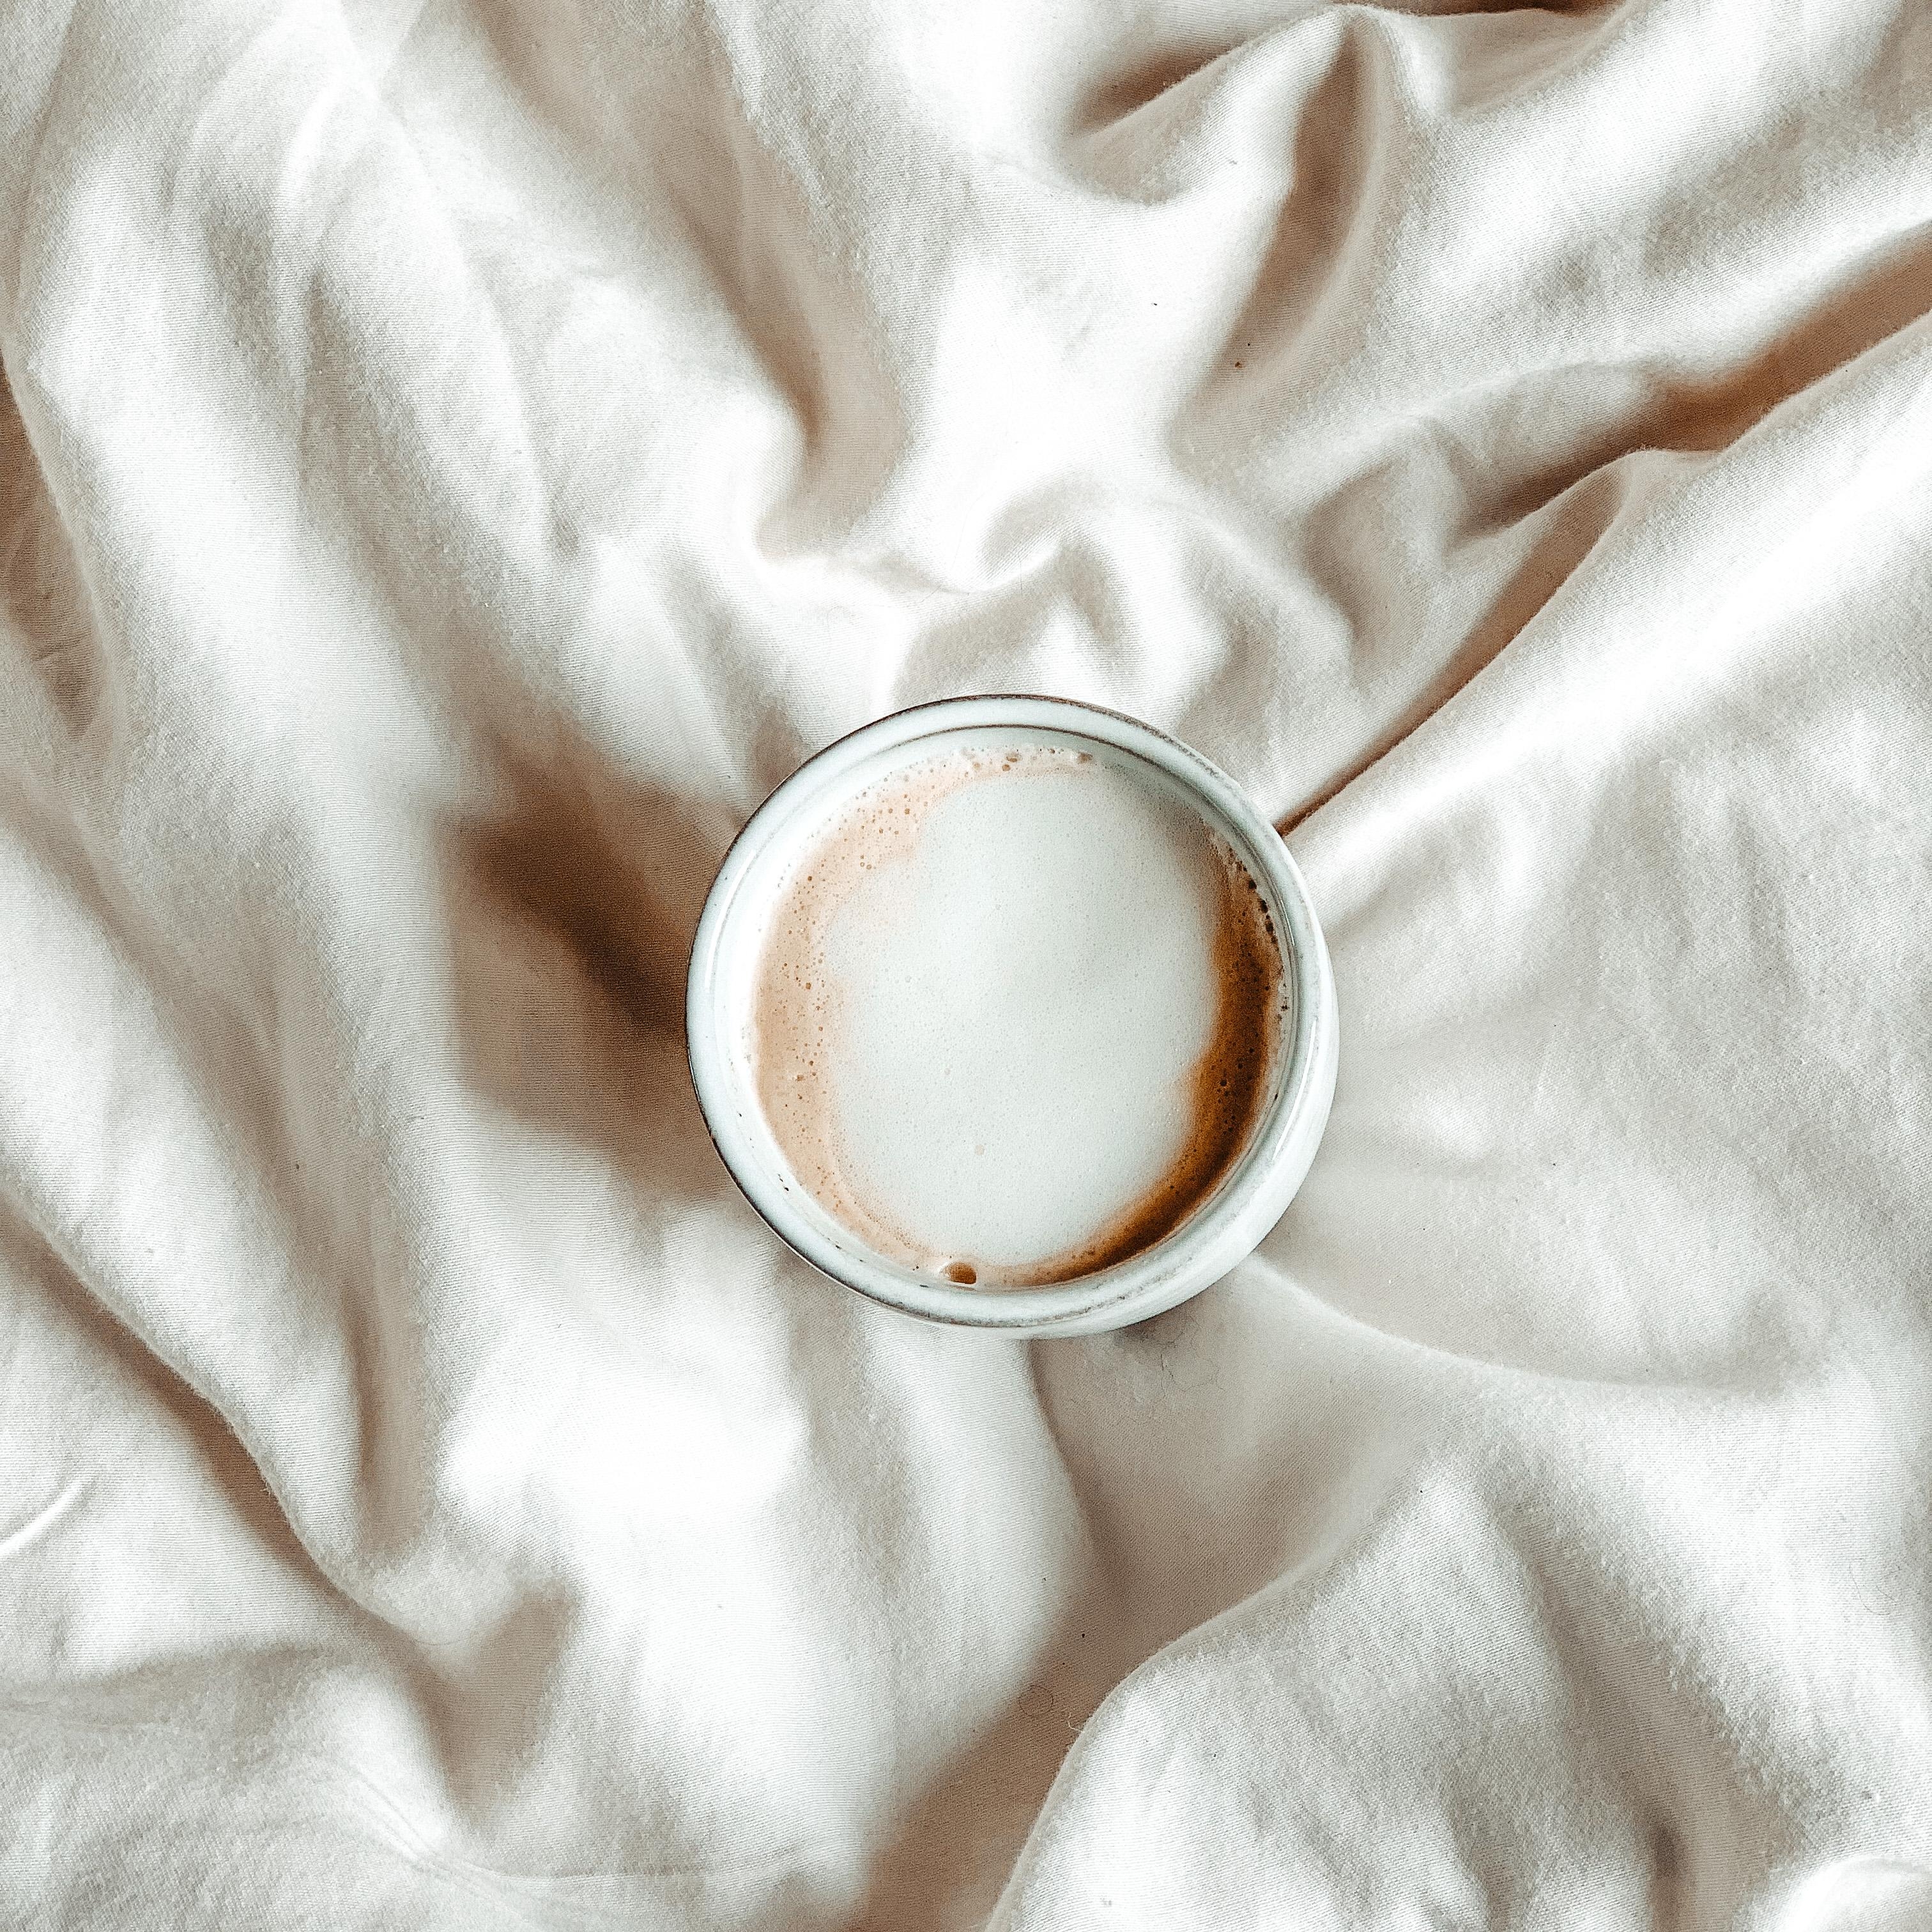 Guten Morgen am #sonntag. Ich starte heute mit einem #kaffee im Bett. #kaffeeliebe #coffee #cappuccino #beige